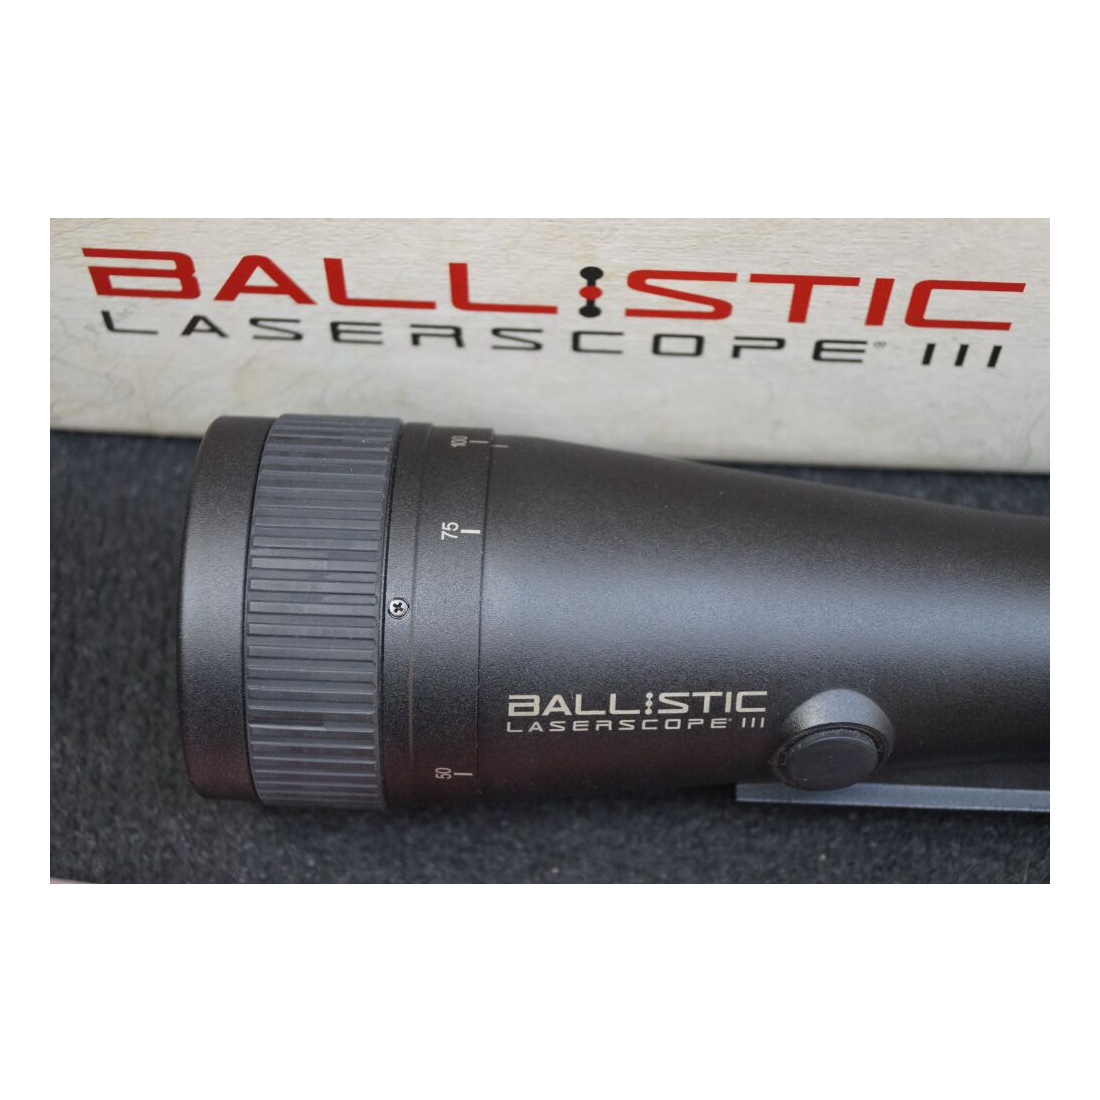 Burris	 Ballistic Laserscope III